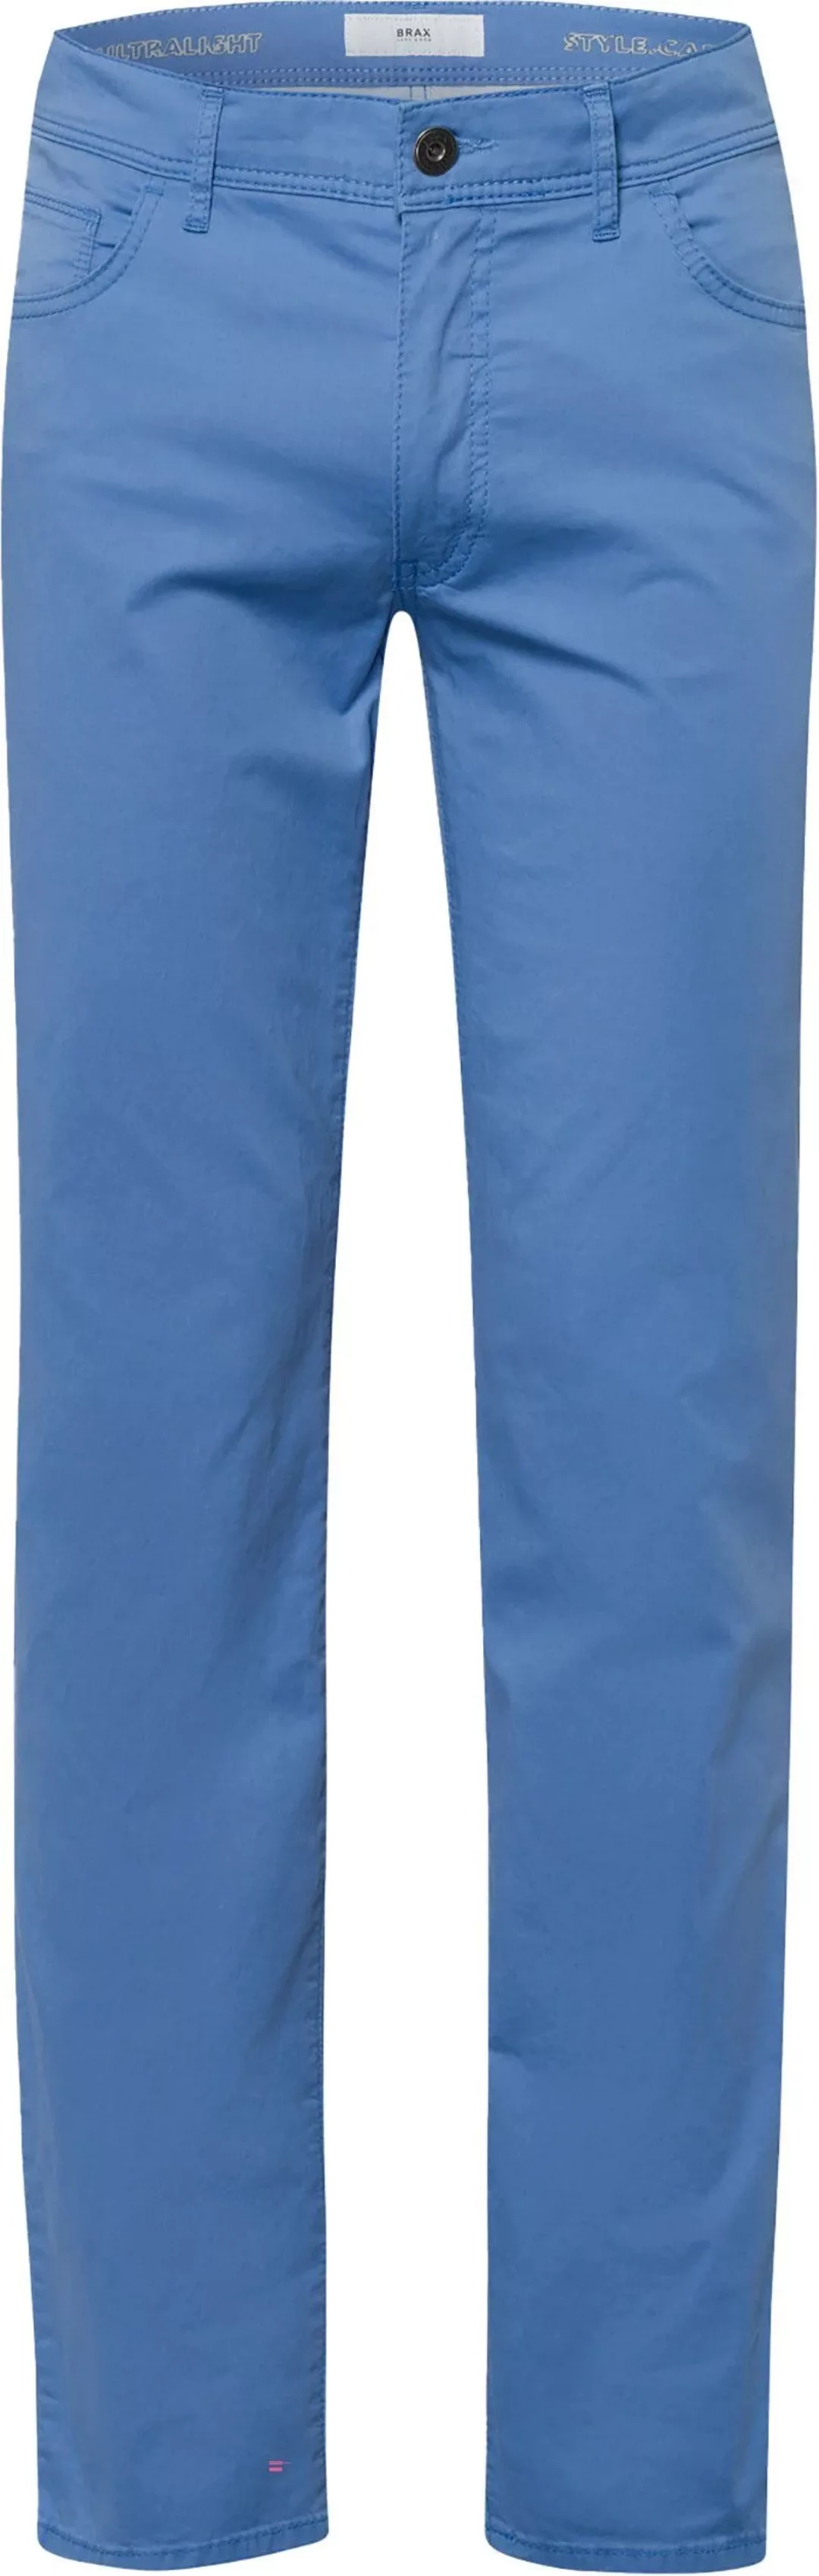 Brax Cadiz Hose Blau - Größe W 33 - L 34 günstig online kaufen